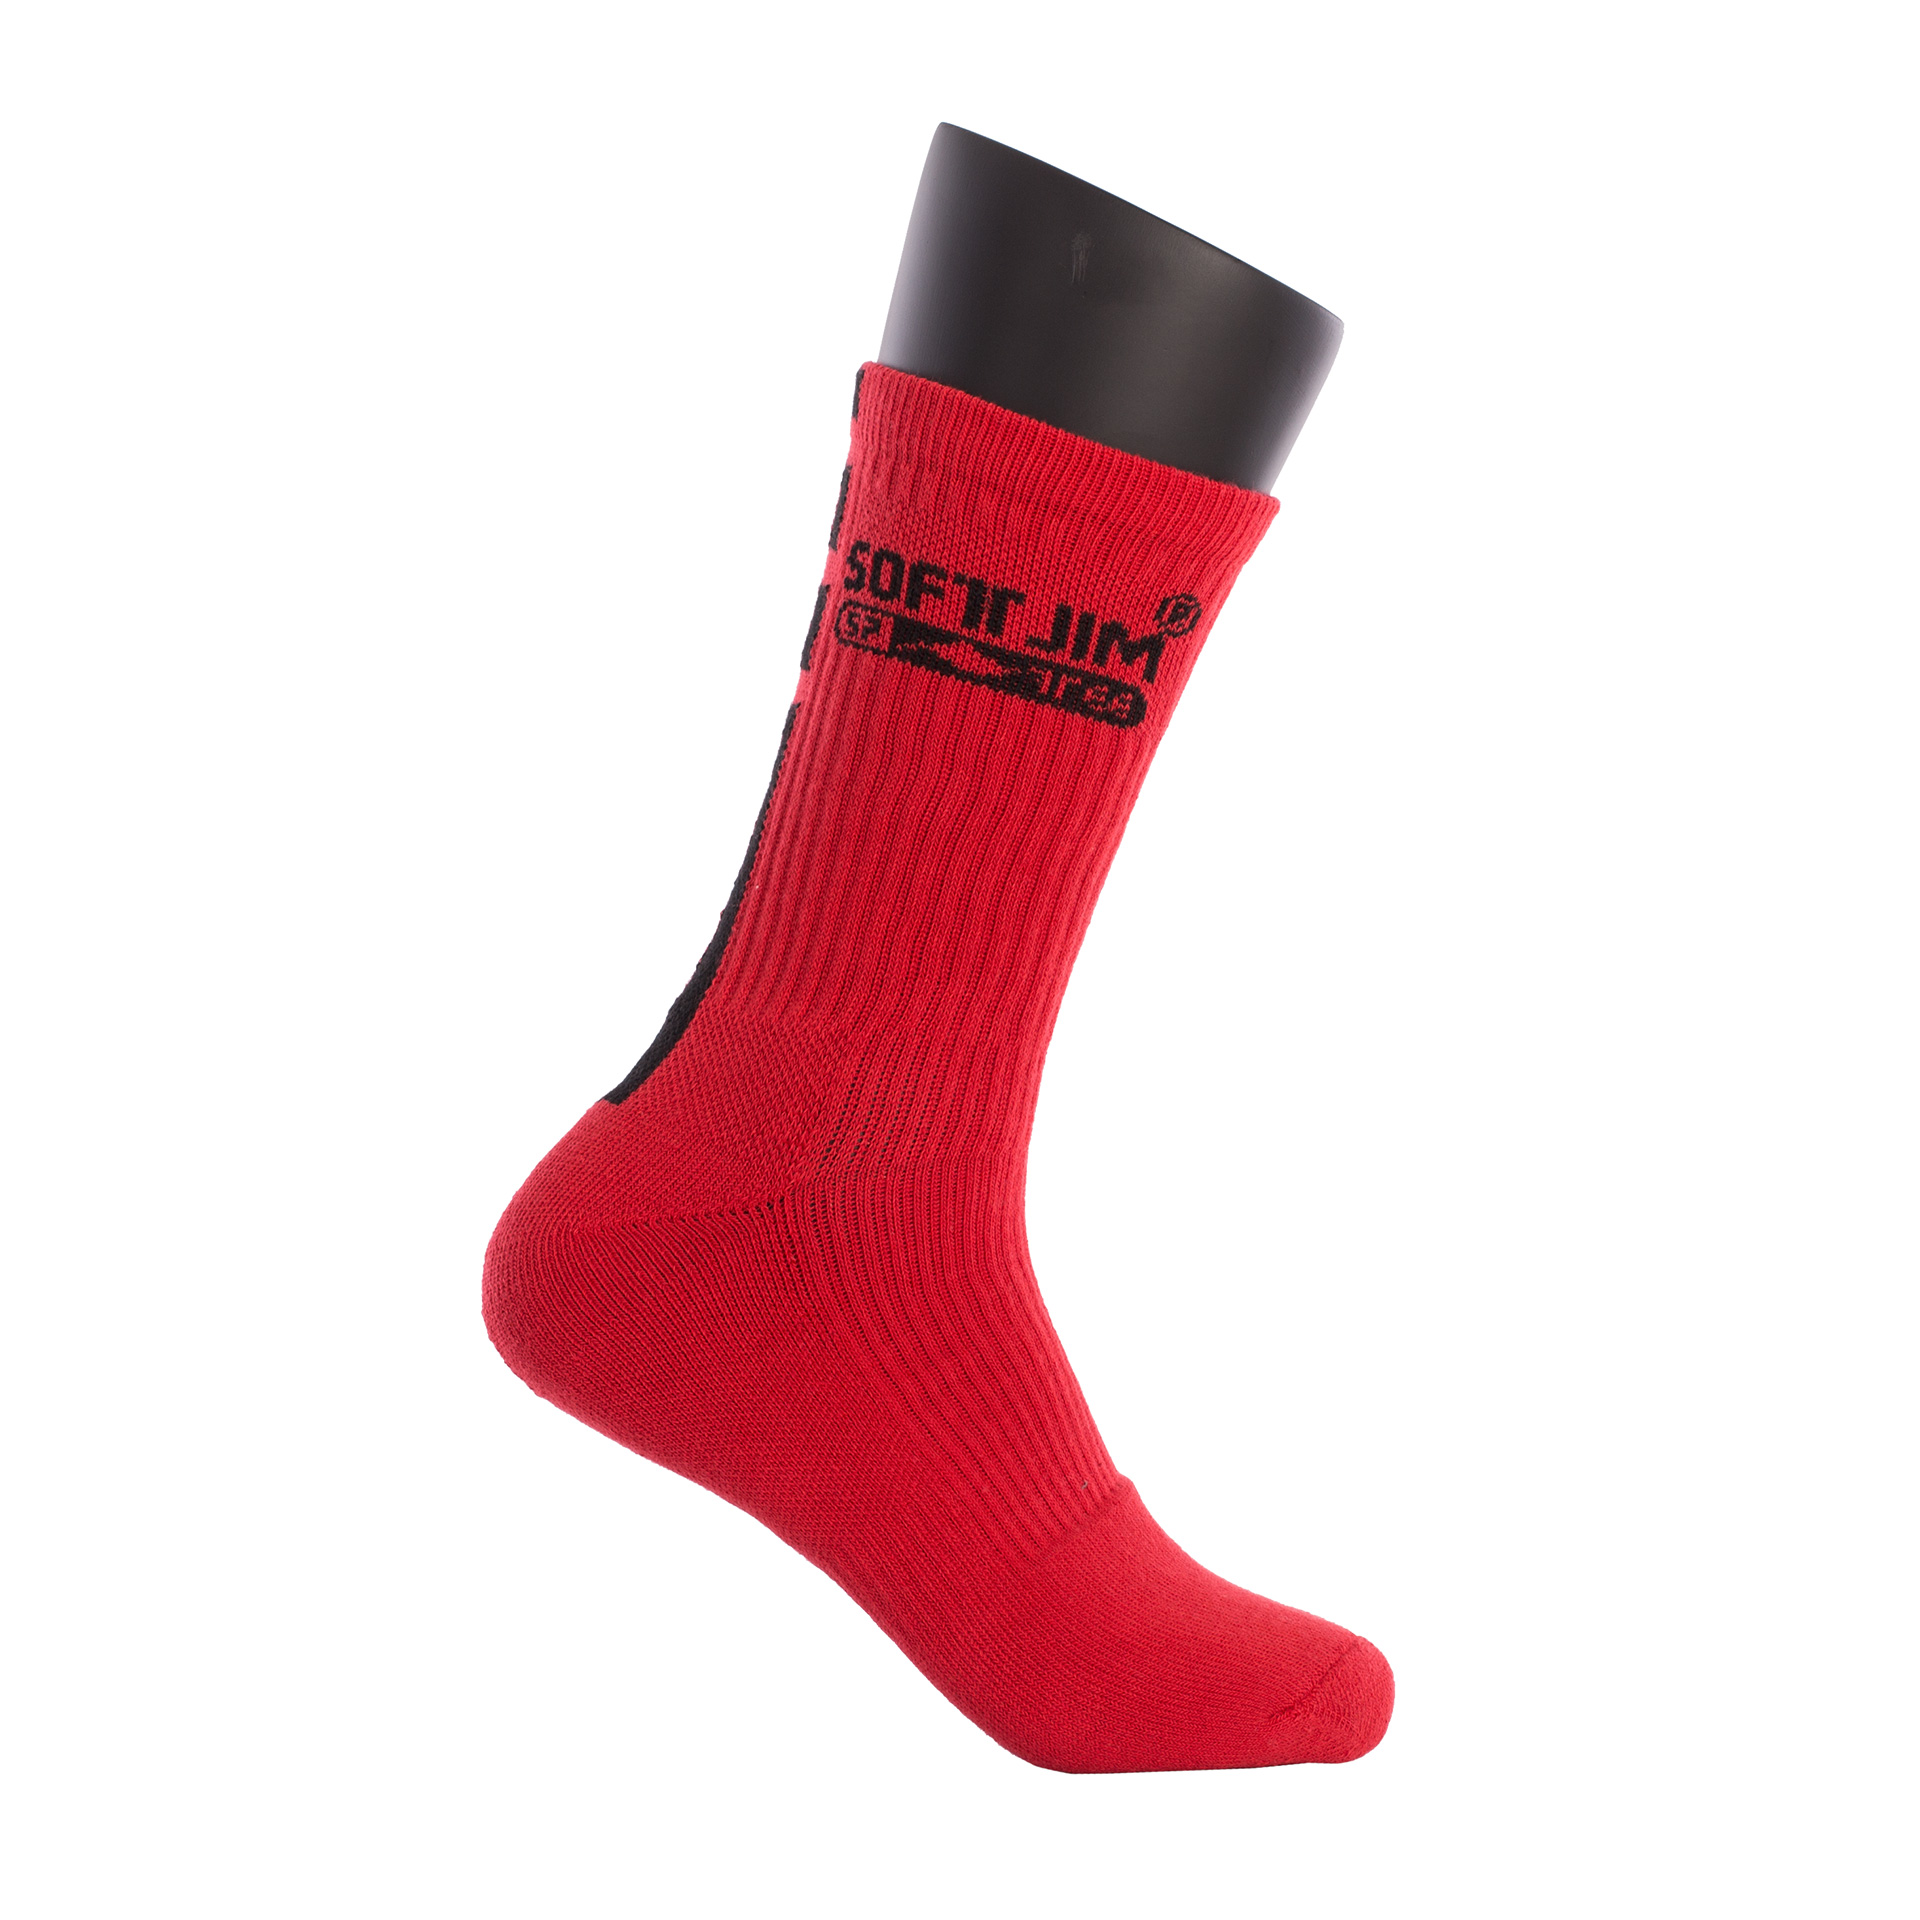 calcetines softjim premium rojo negro 4